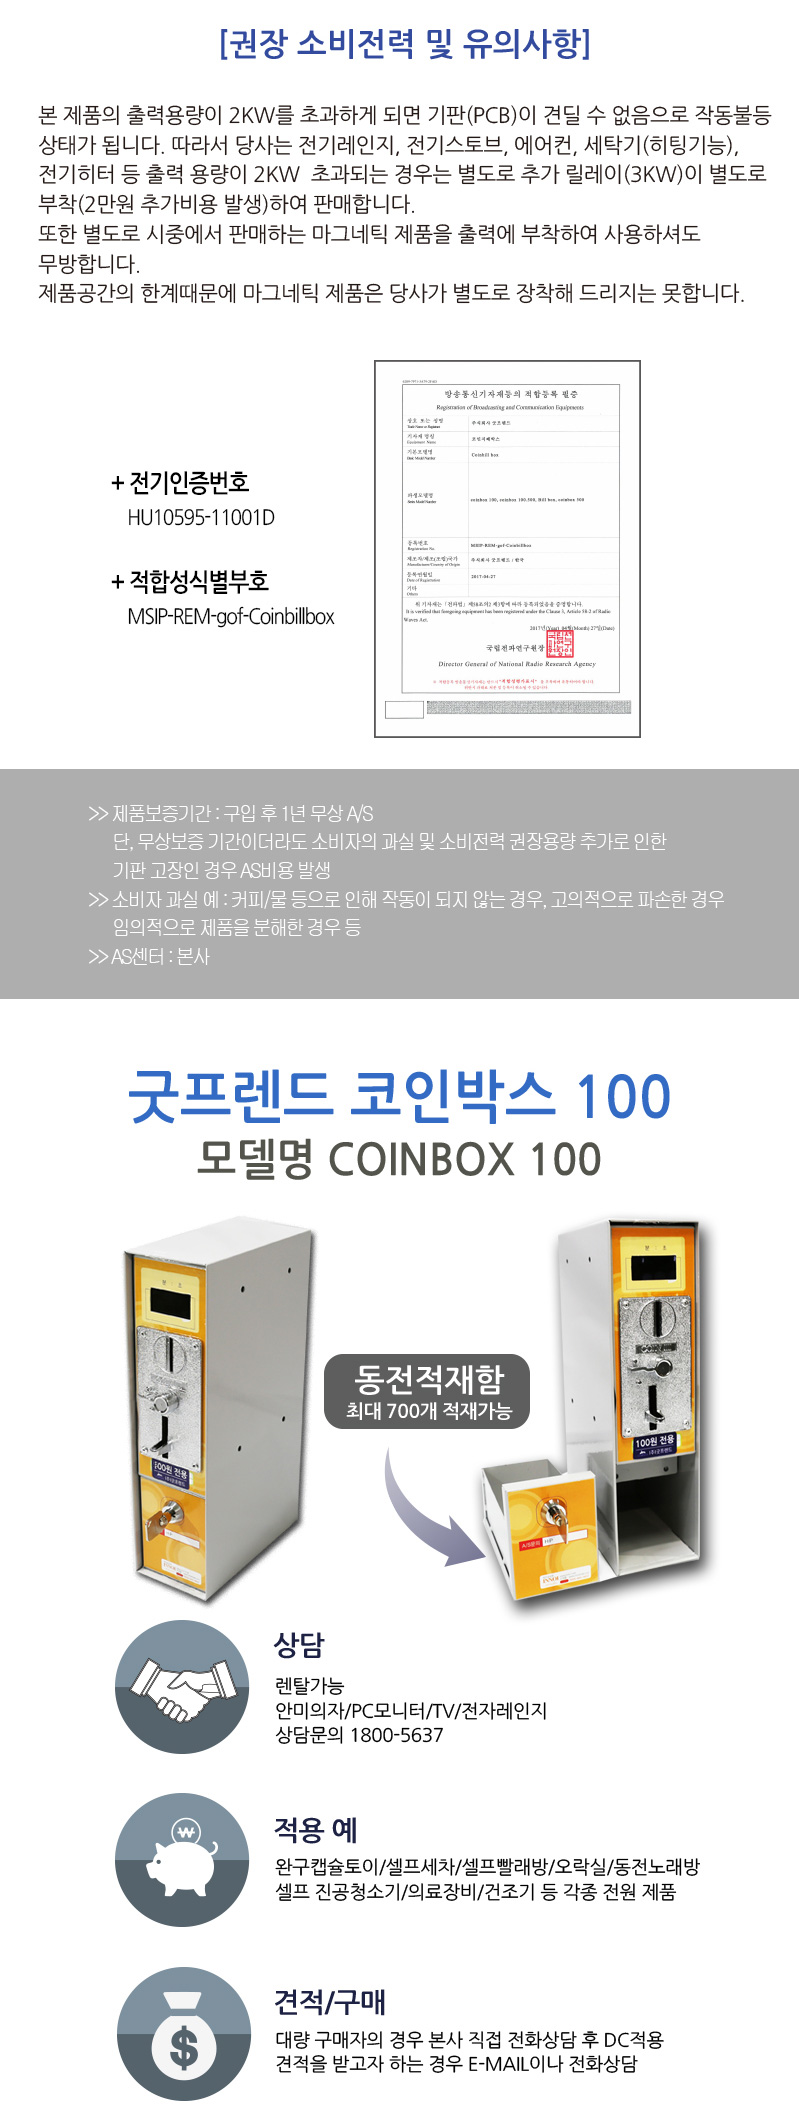 COINBOX_100_03.jpg